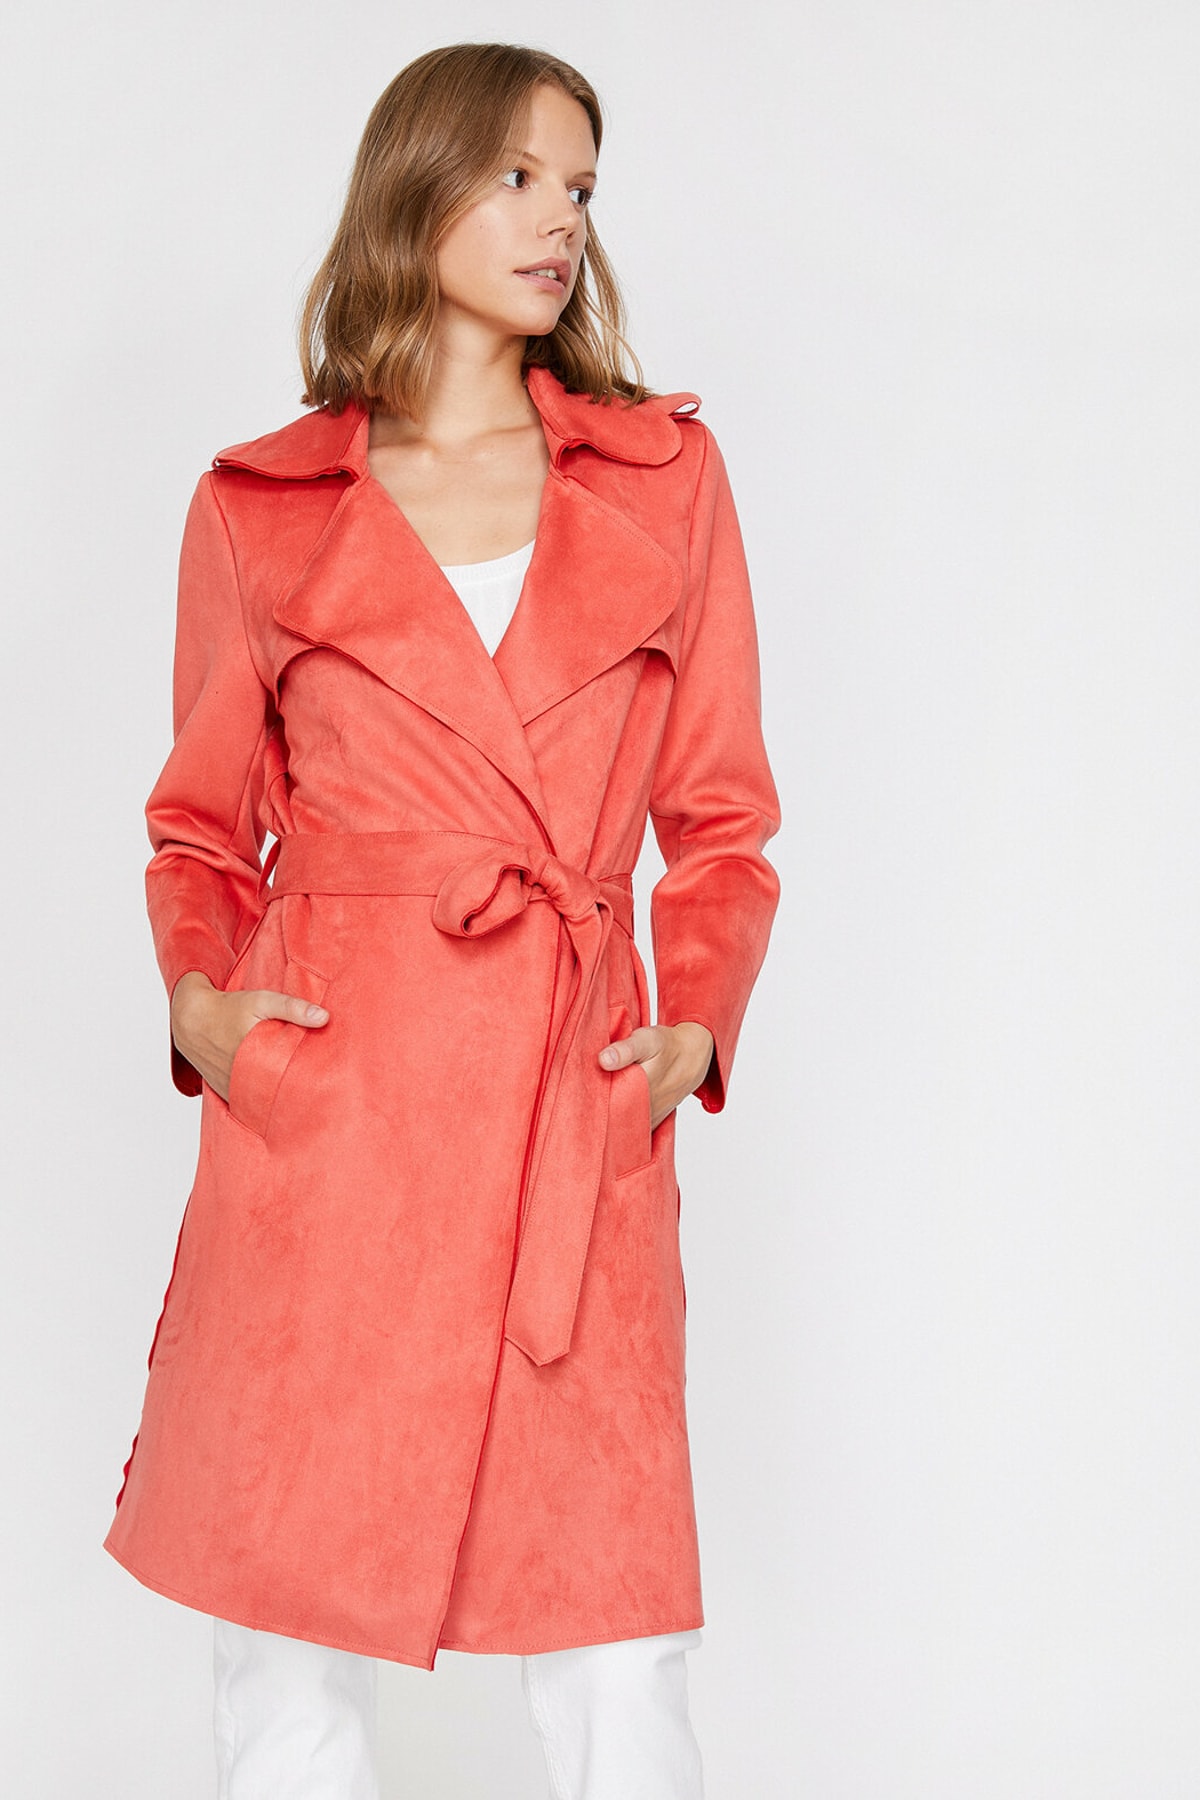 Koton Women's Red Suede-Look Trench Coat